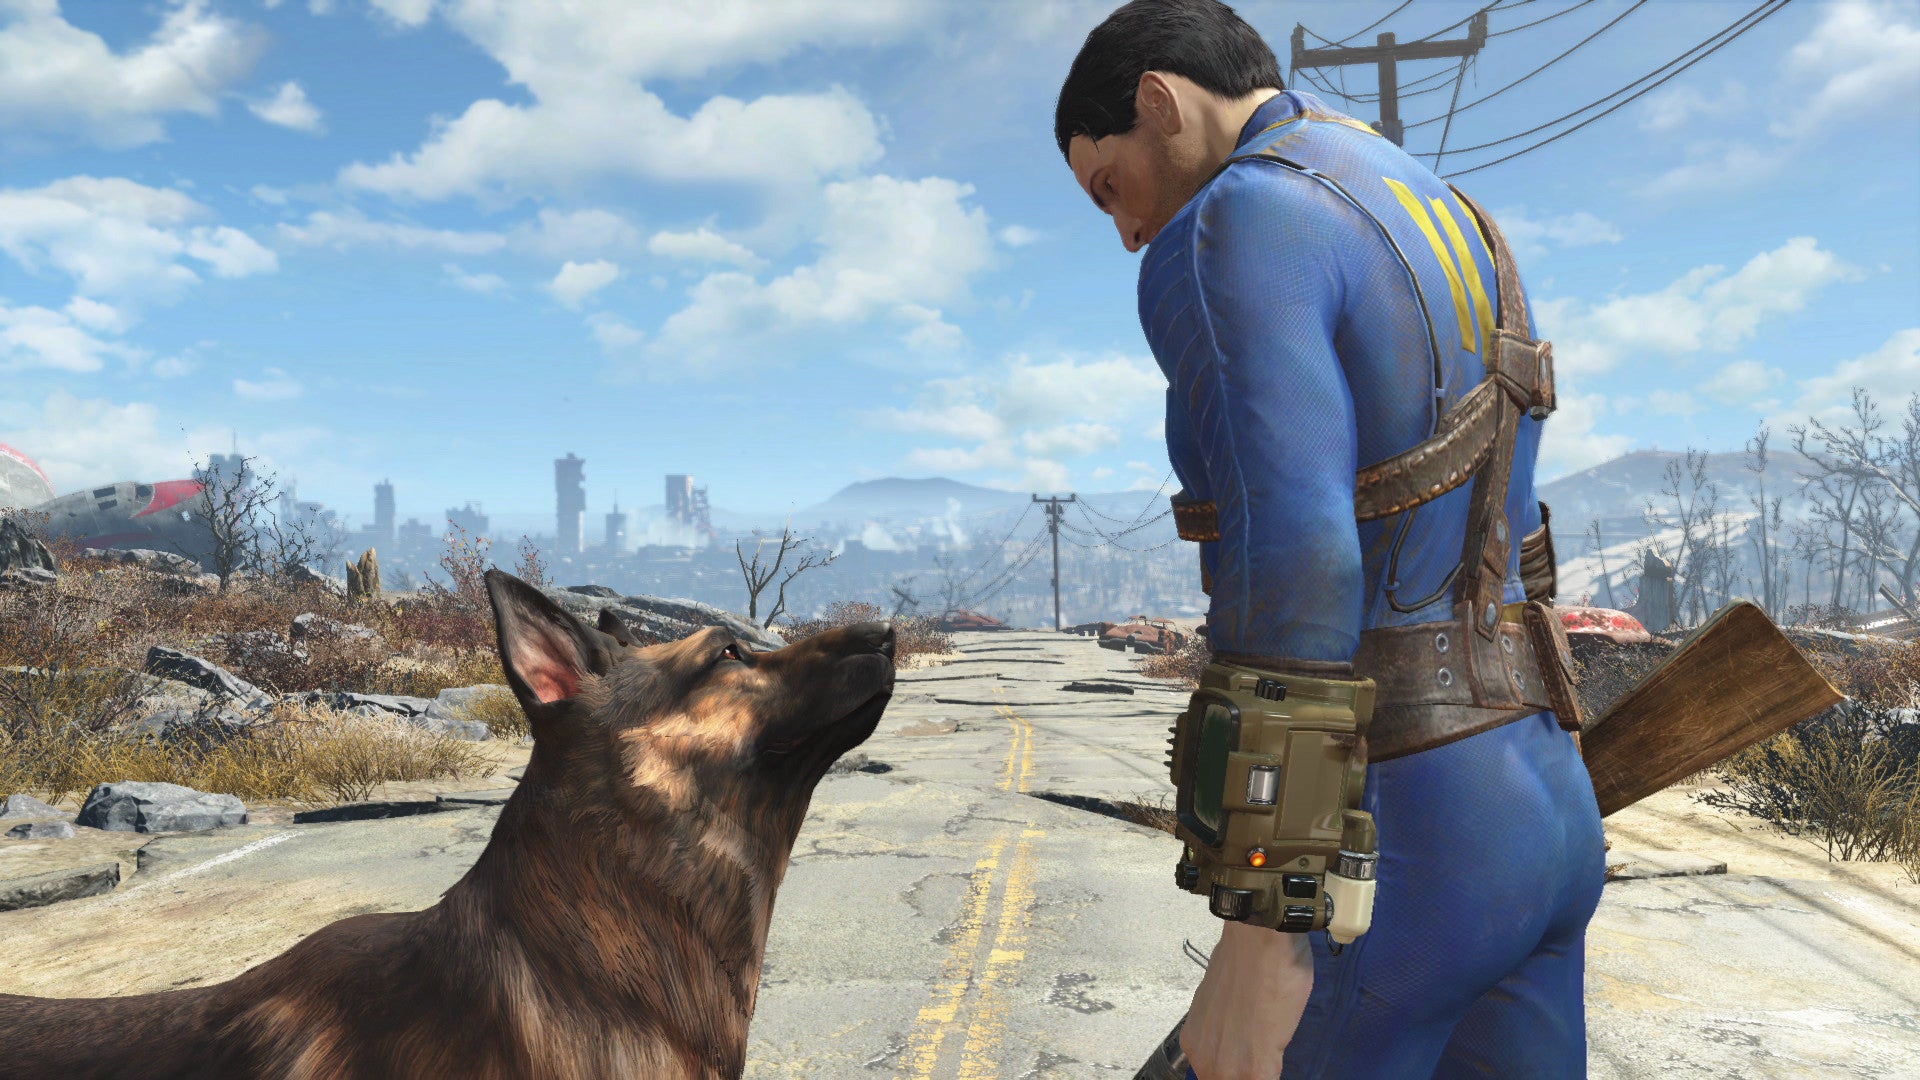 fallout 4 next-gen update sloopt cruciale mod, maar spelers hebben een workaround gevonden